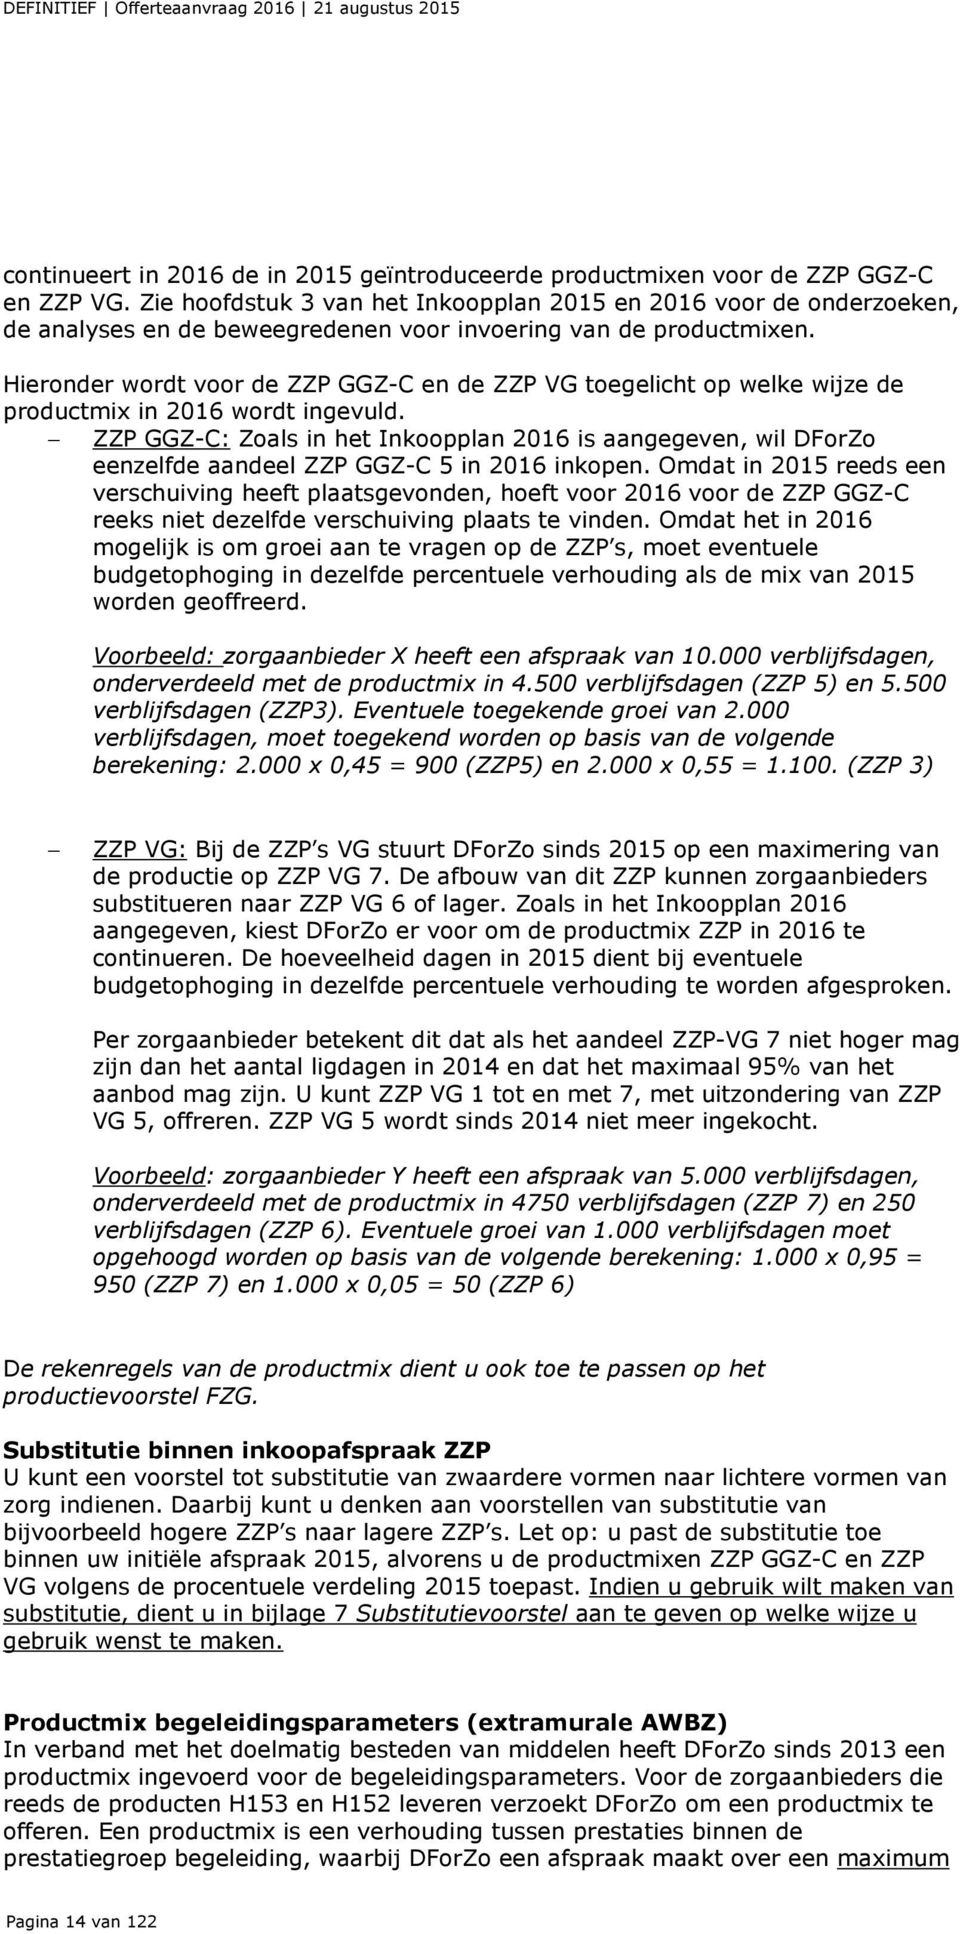 Hieronder wordt voor de ZZP GGZ-C en de ZZP VG toegelicht op welke wijze de productmix in 2016 wordt ingevuld.